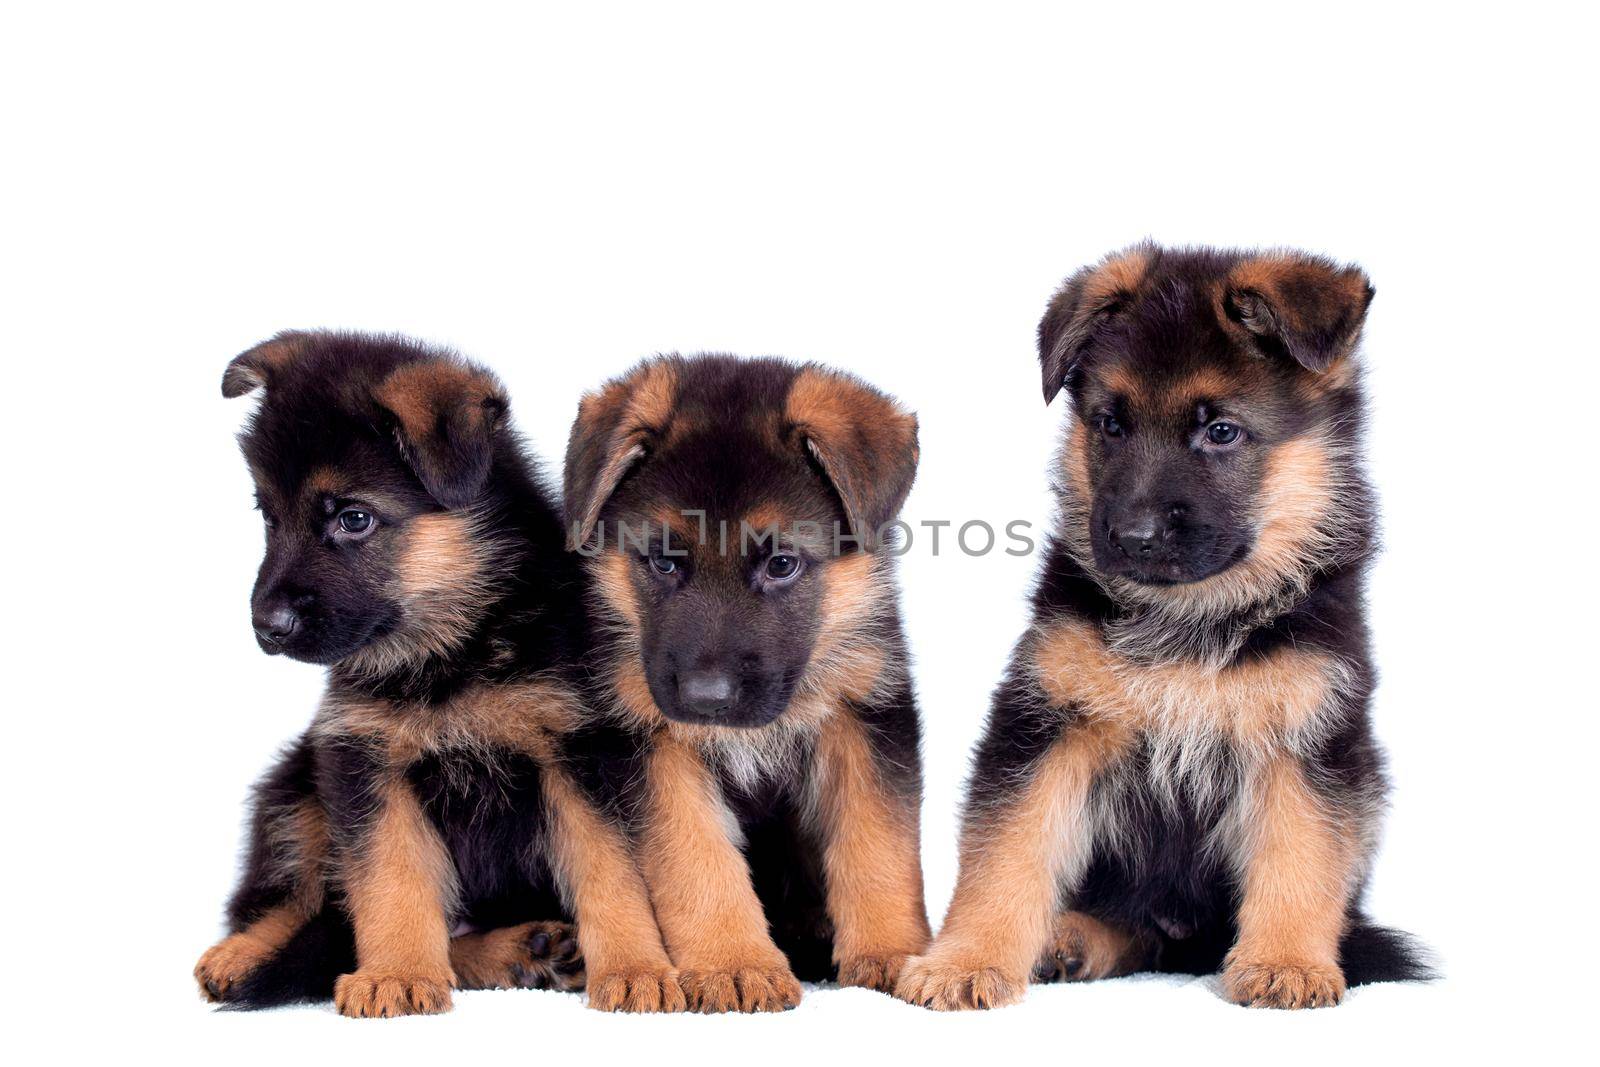 Three German shepherd puppies by RosaJay